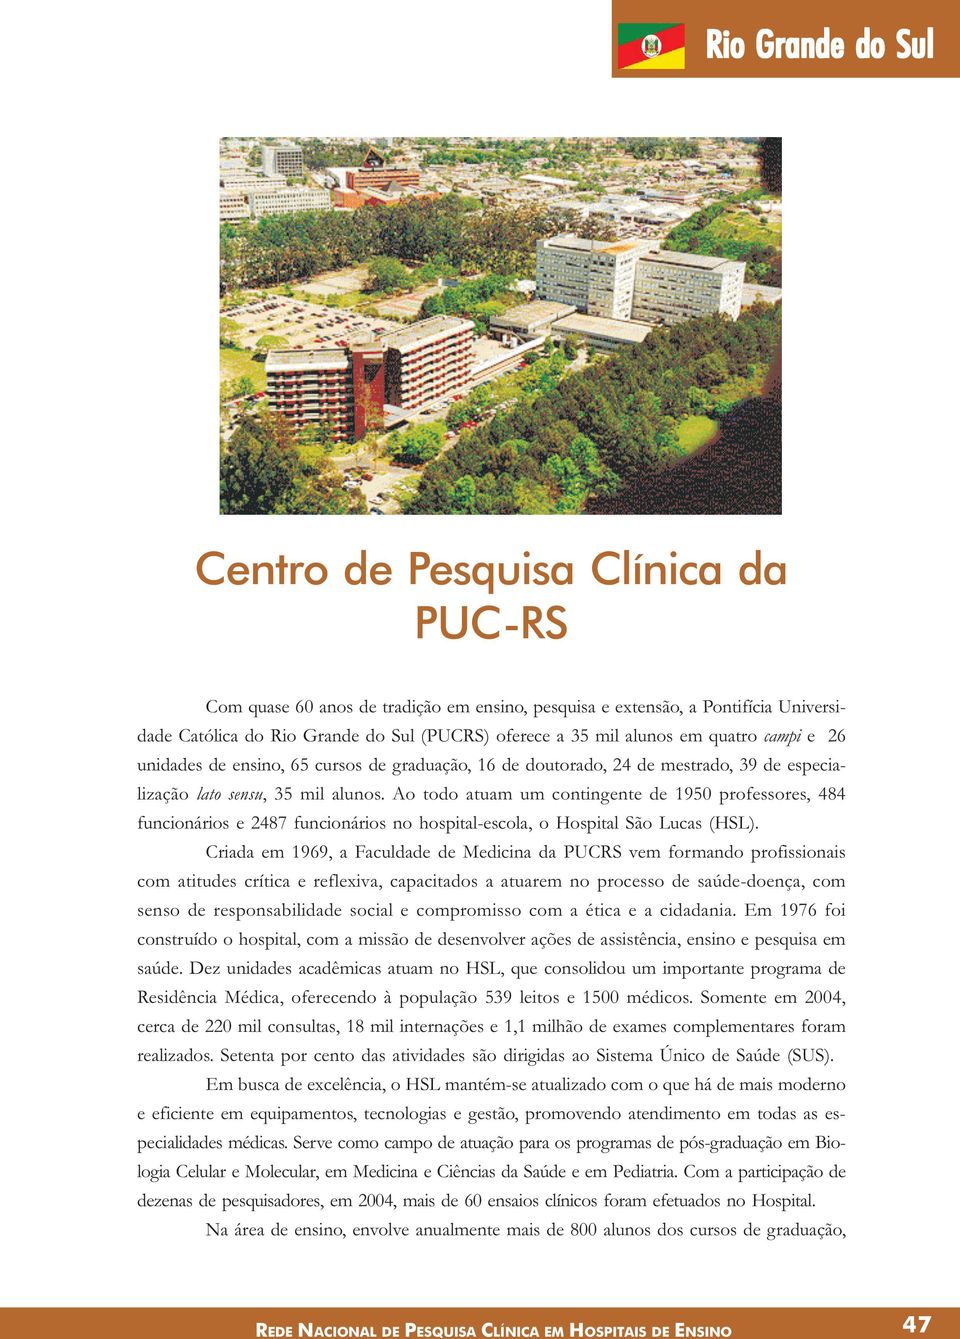 Ao todo atuam um contingente de 1950 professores, 484 funcionários e 2487 funcionários no hospital-escola, o Hospital São Lucas (HSL).